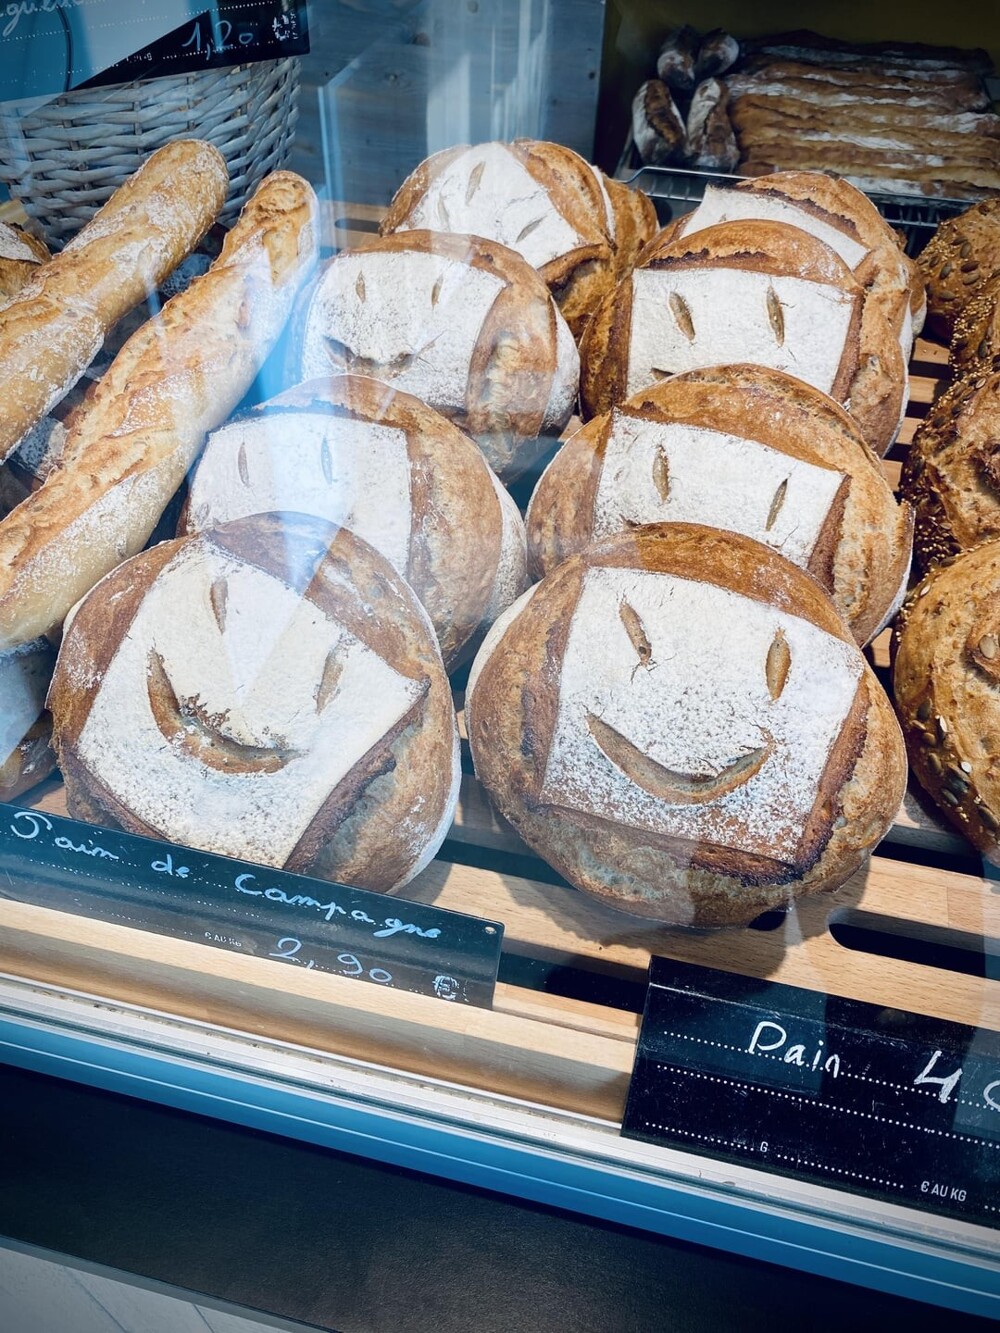 2. Этот хлеб улыбается